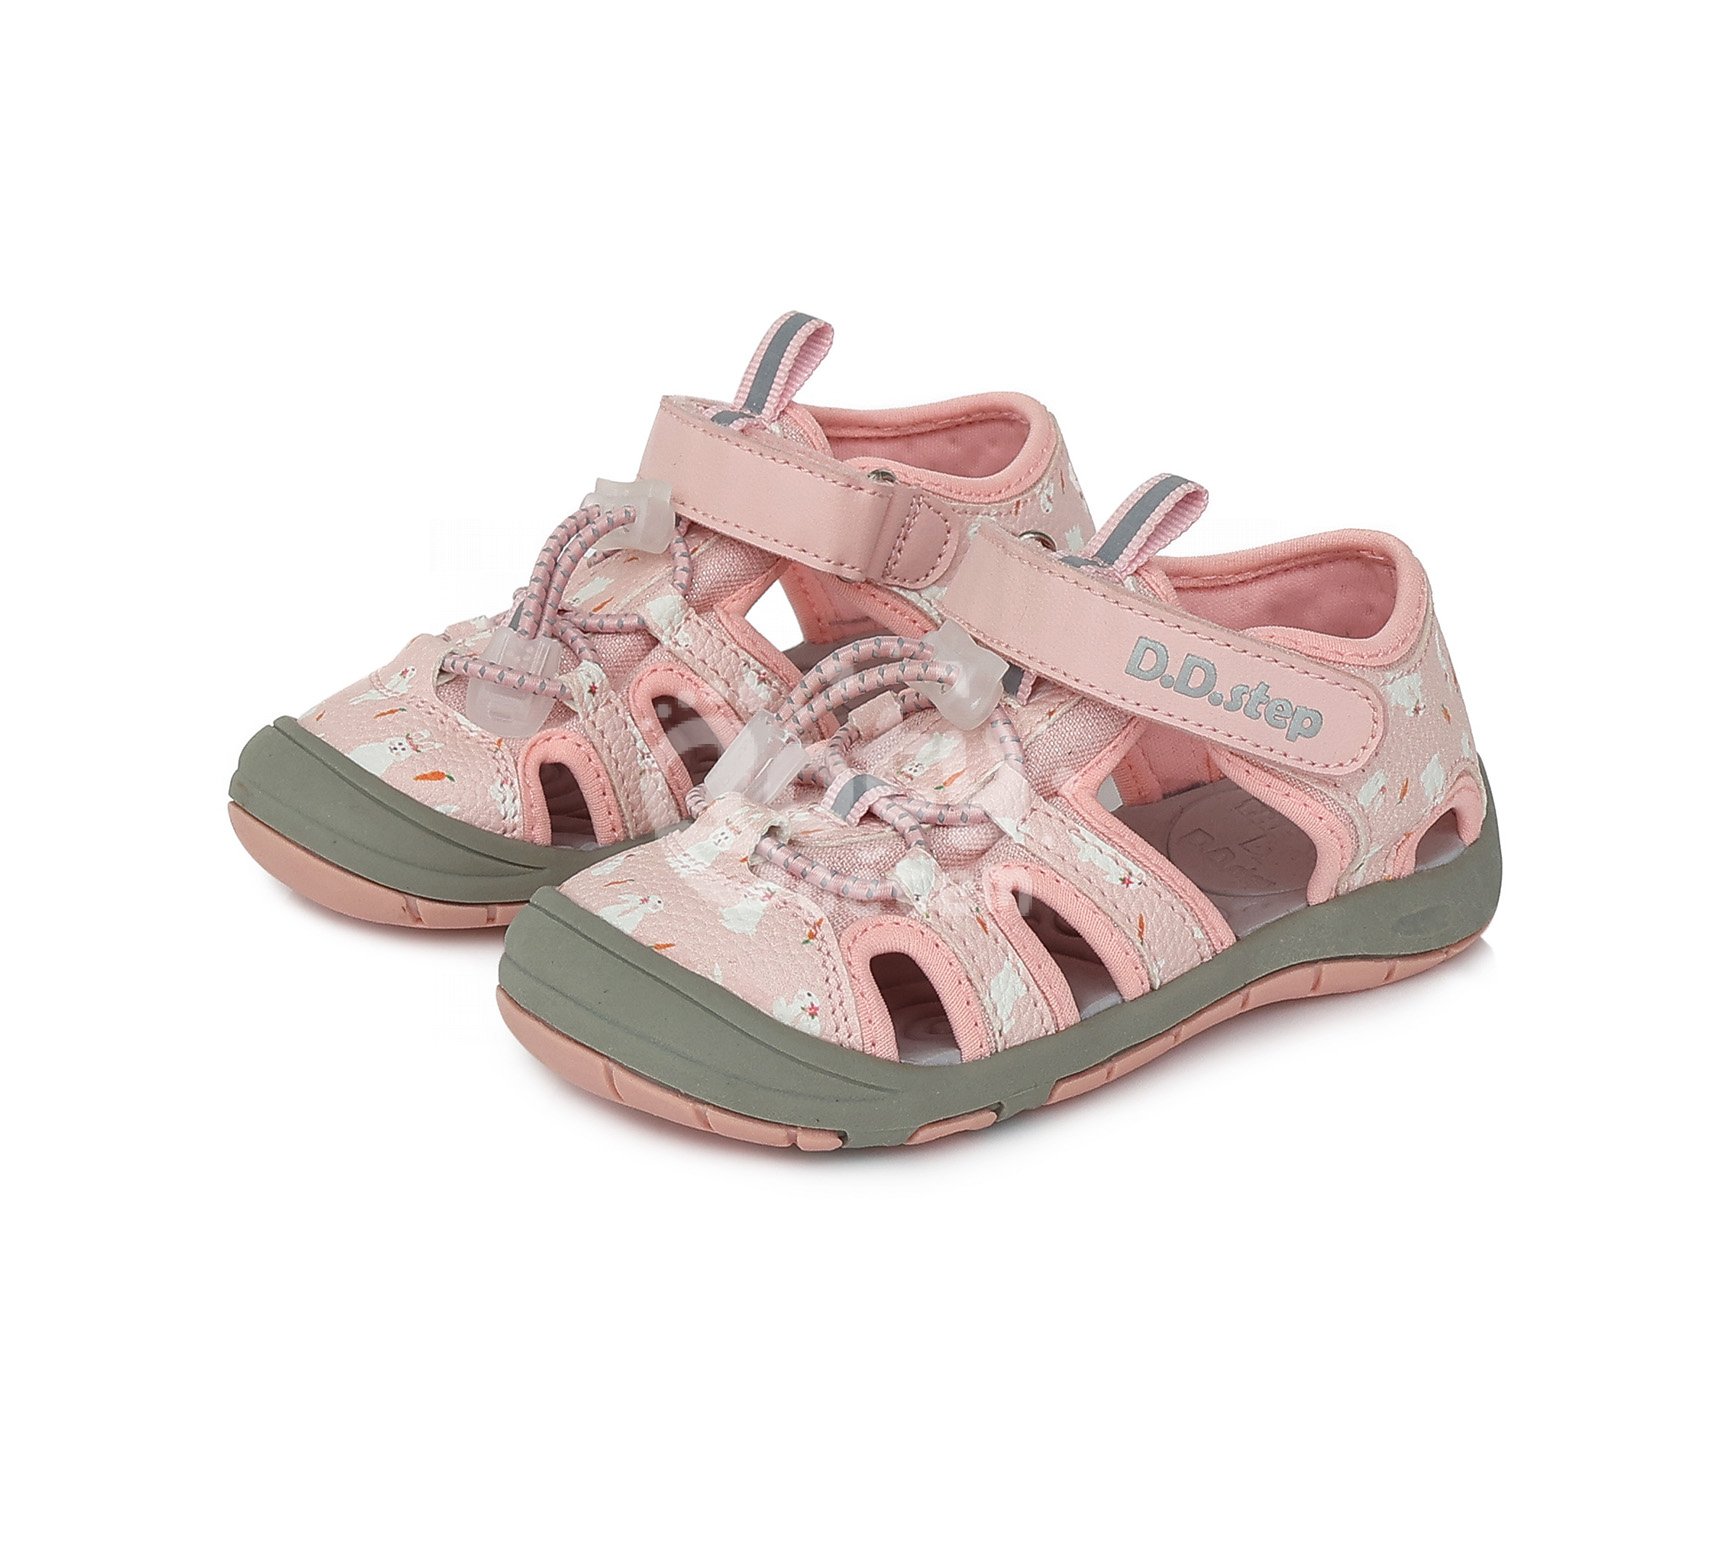 Sportovní sandálky D.D.step G065-394B Daisy Pink